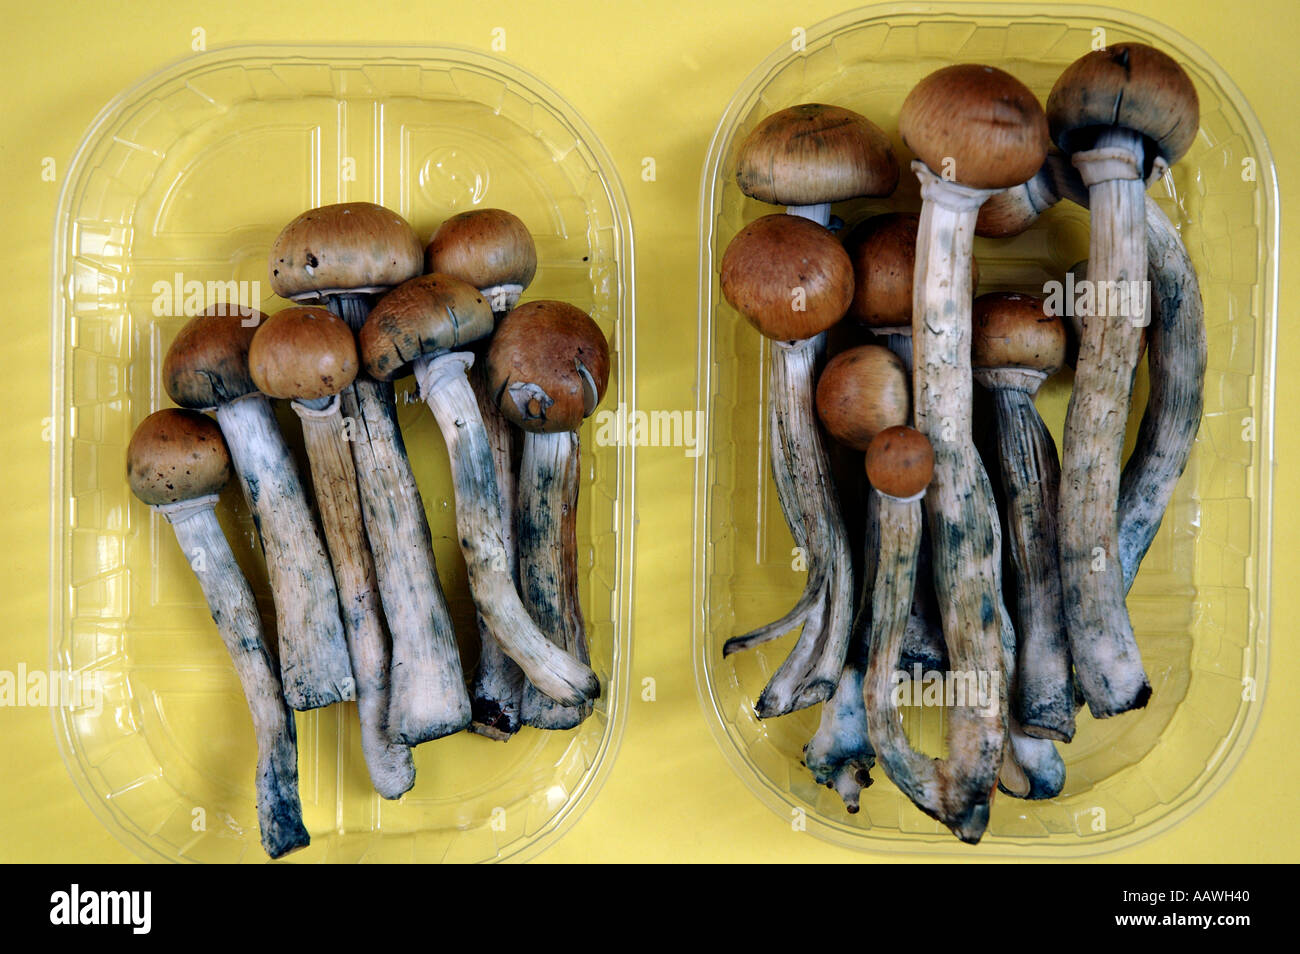 Colombiano freschi i funghi magici legalmente in vendita nel mercato di Camden Londra Giugno 2005 presto la loro vendita sarà illegale. Foto Stock